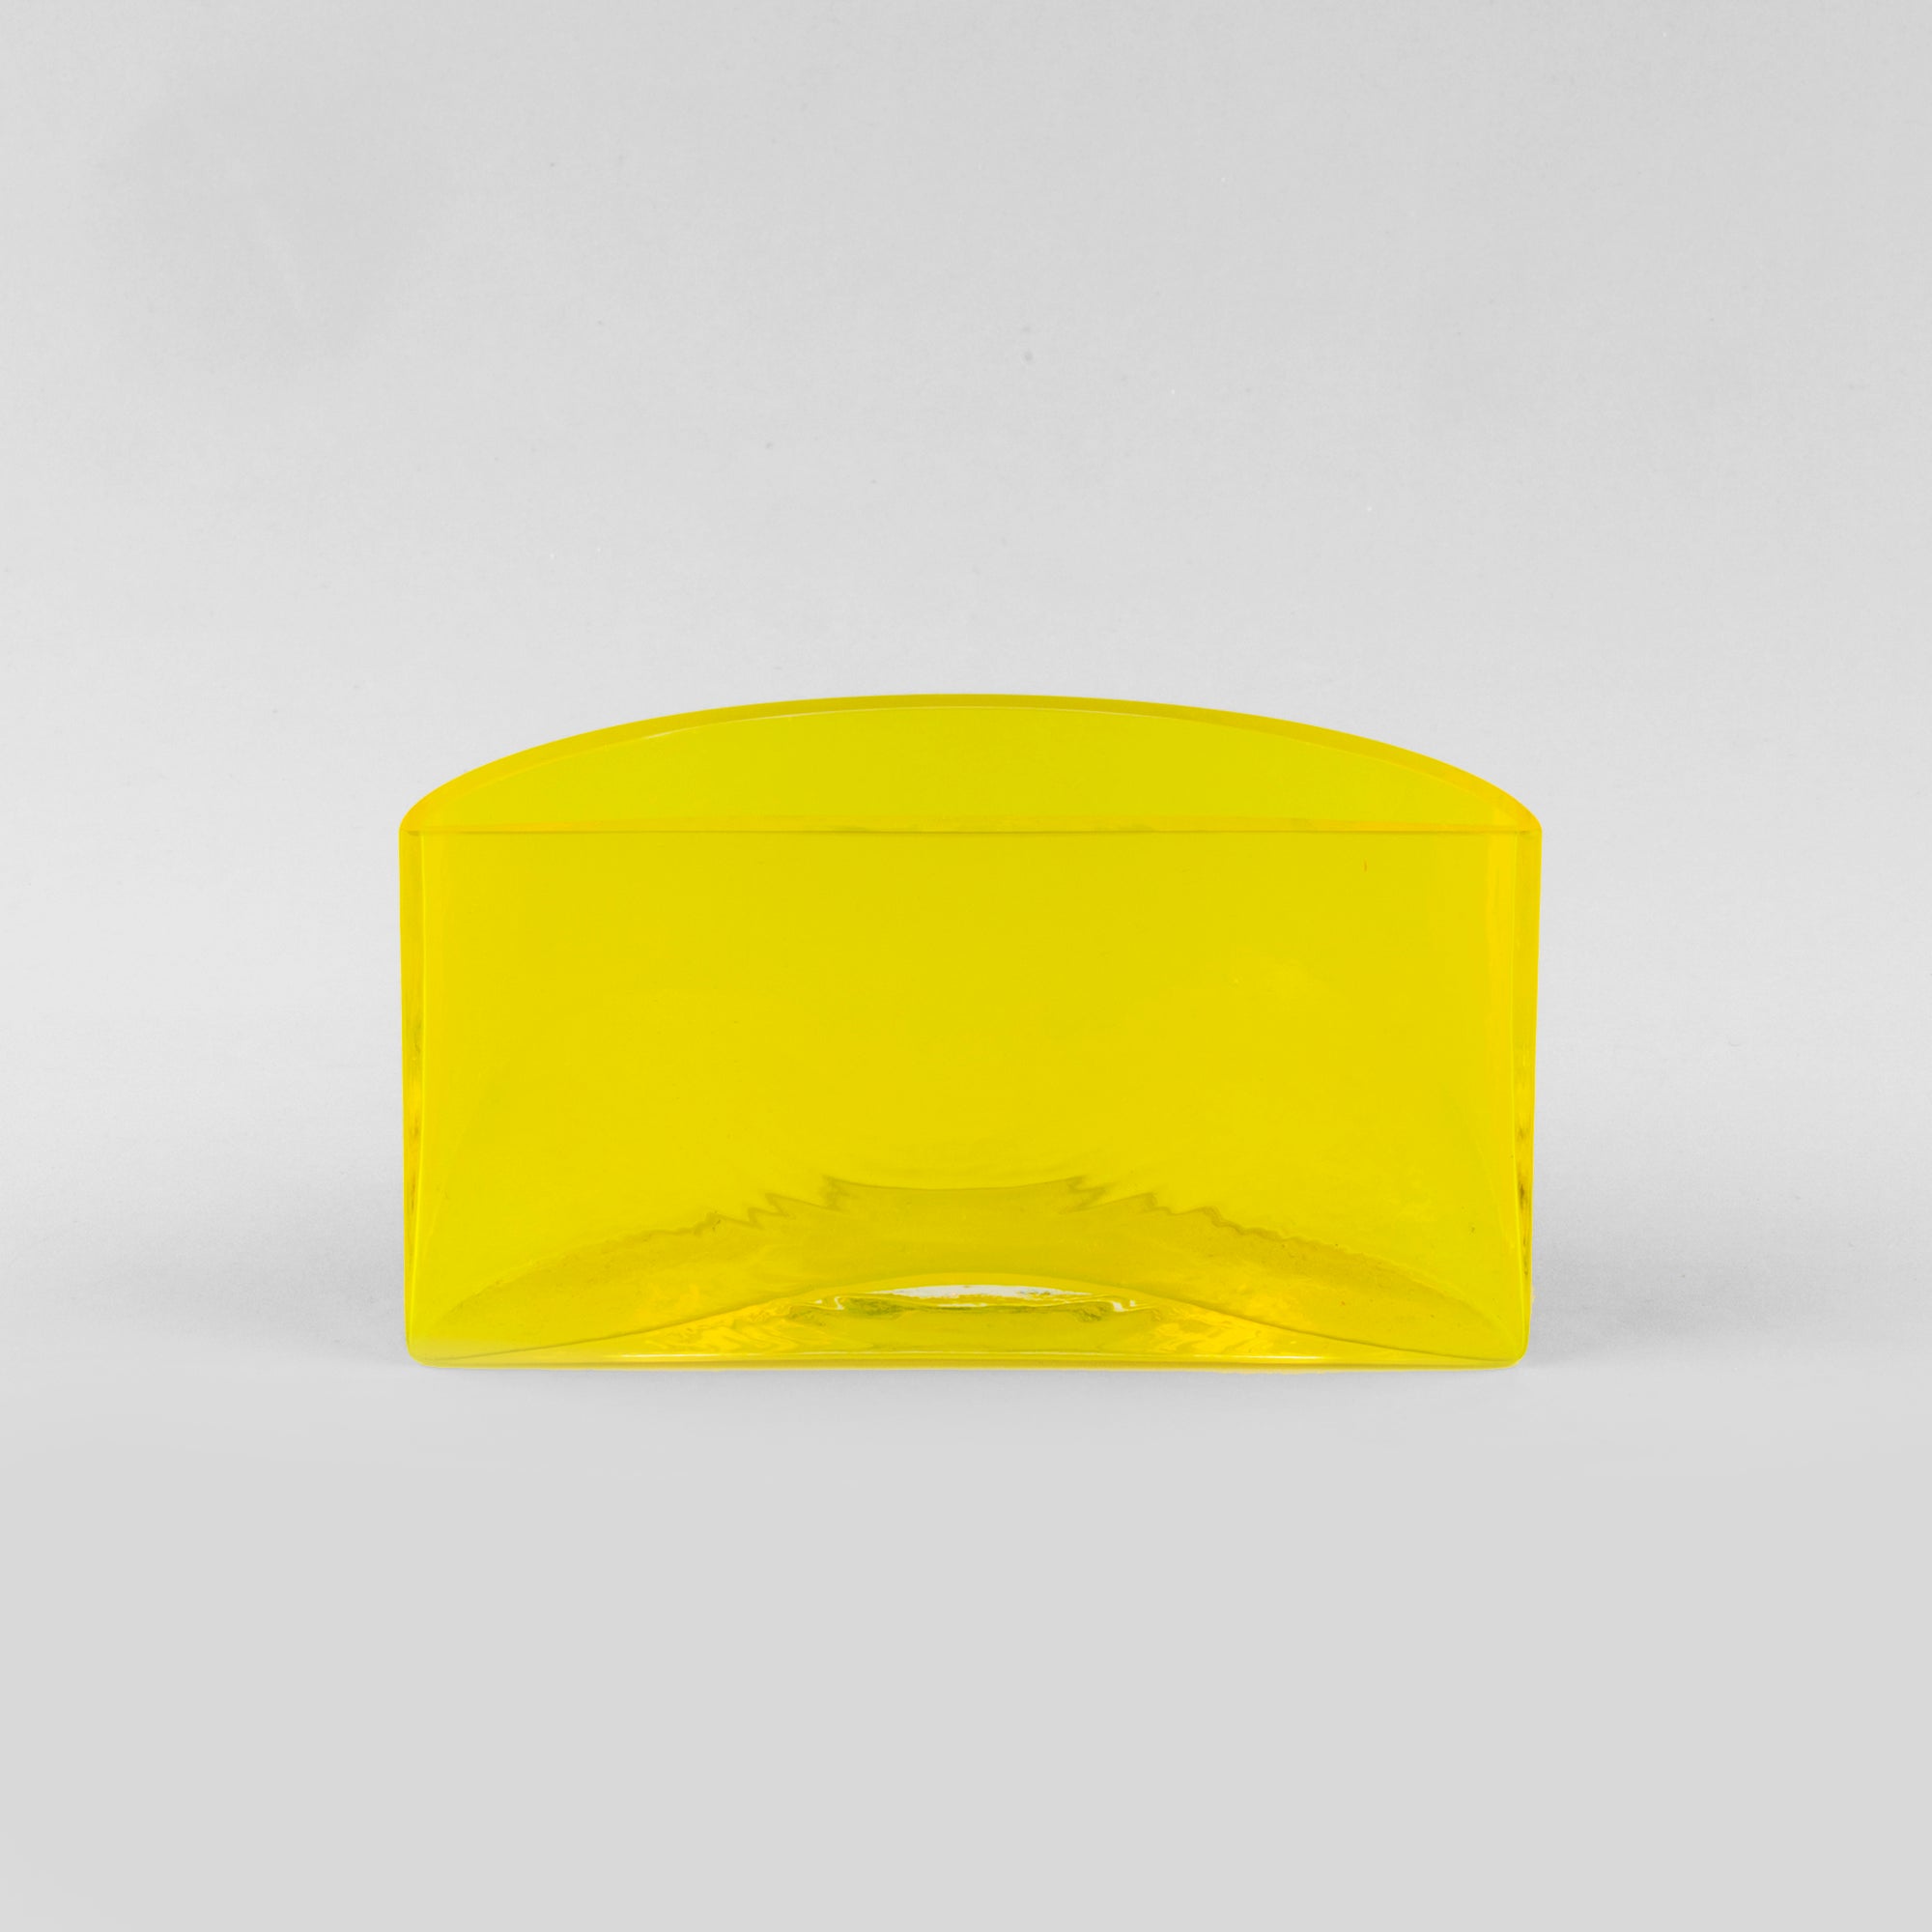 Emma Elizabeth Designs | Hand Blown Yellow Glass Vase